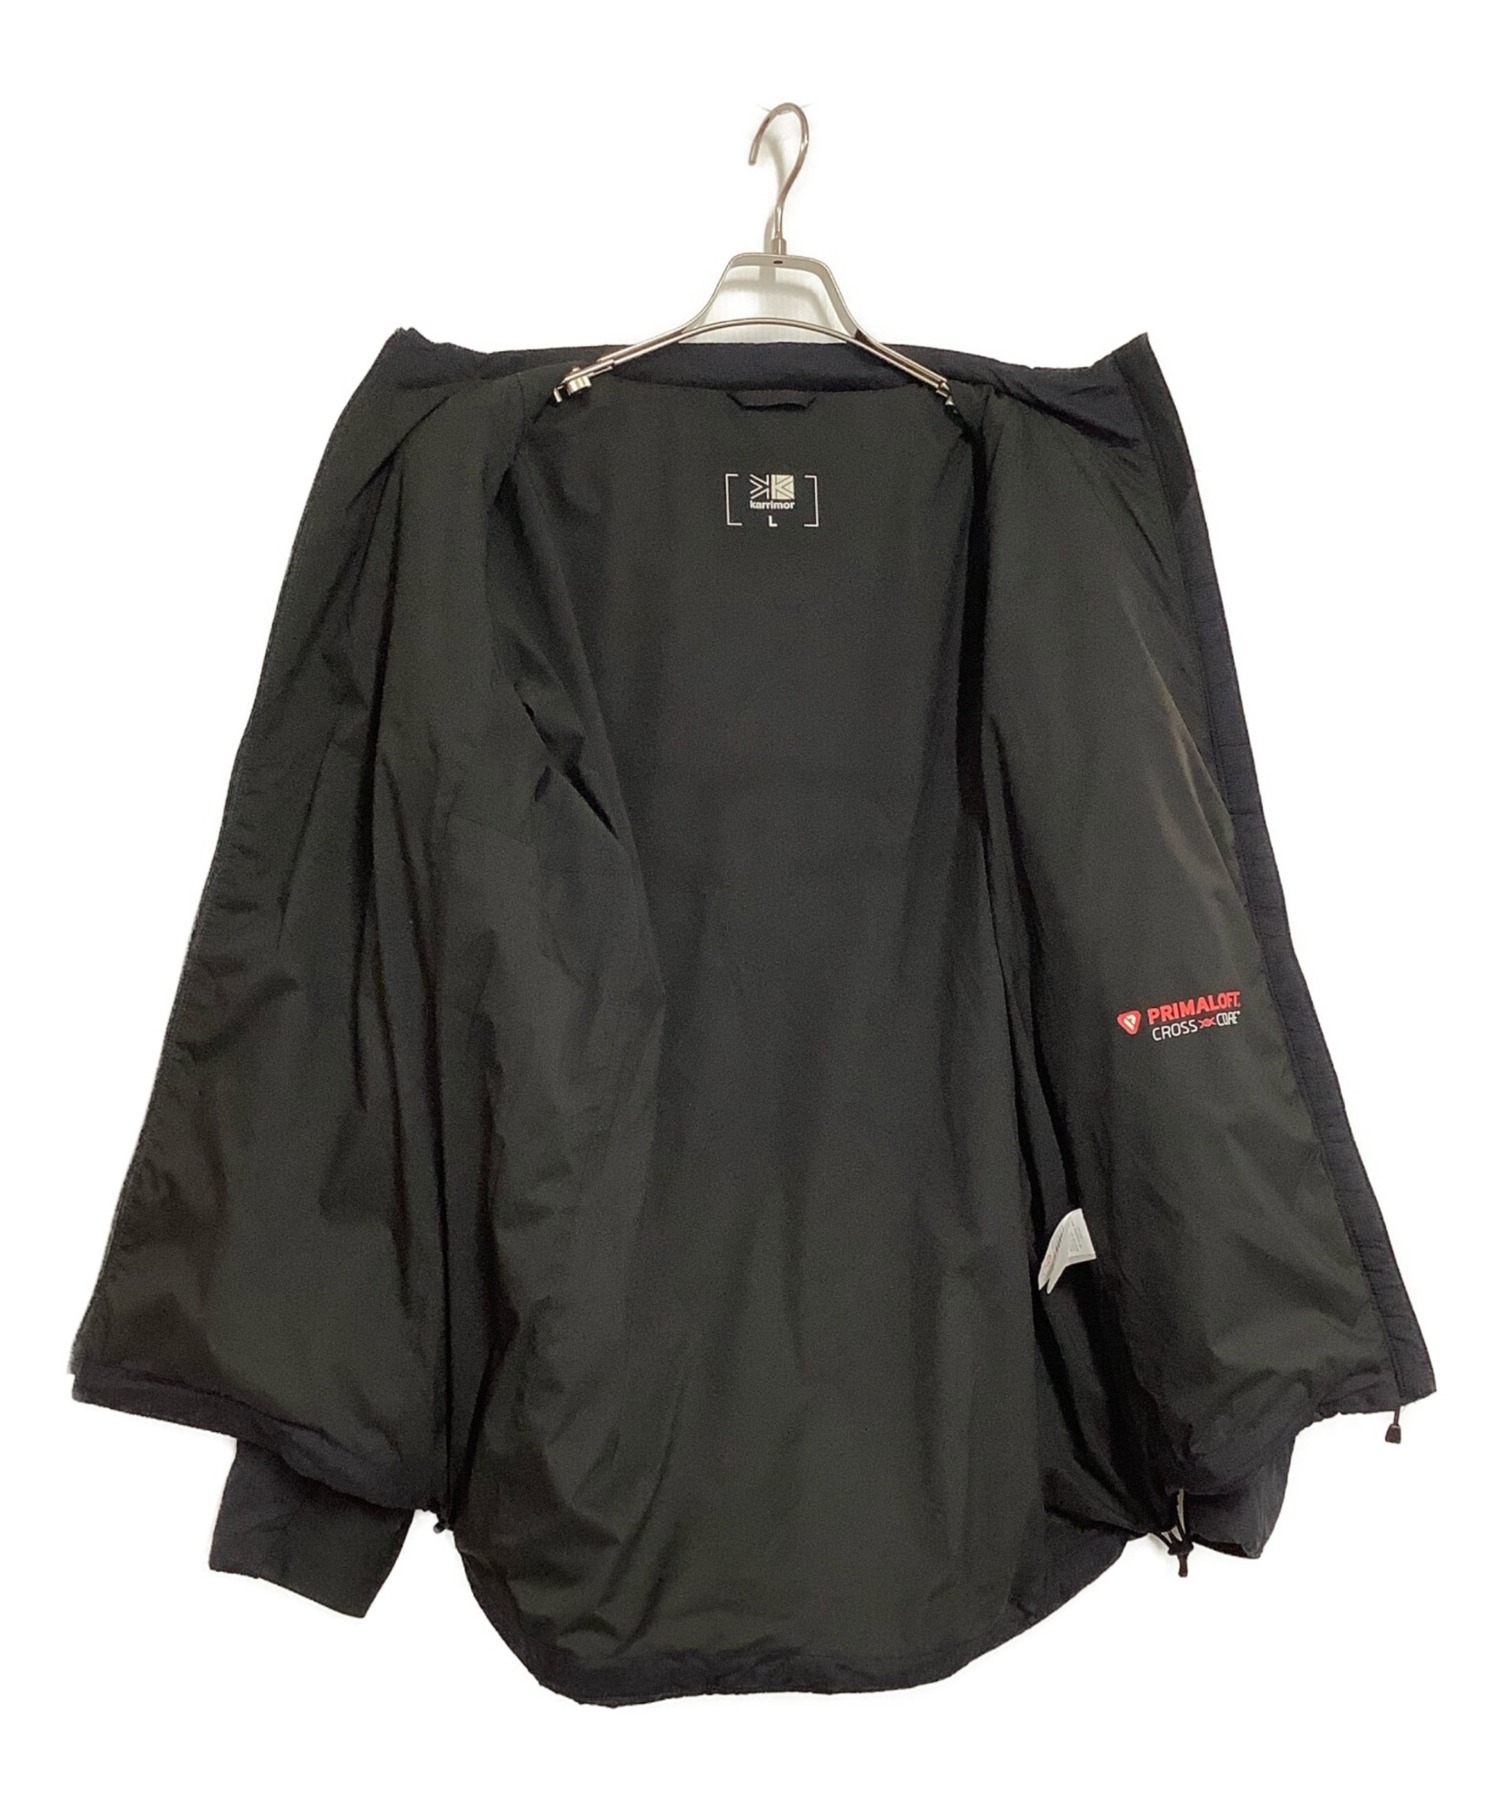 Karrimor (カリマー) インナーインサレーションジャケット ブラック サイズ:L